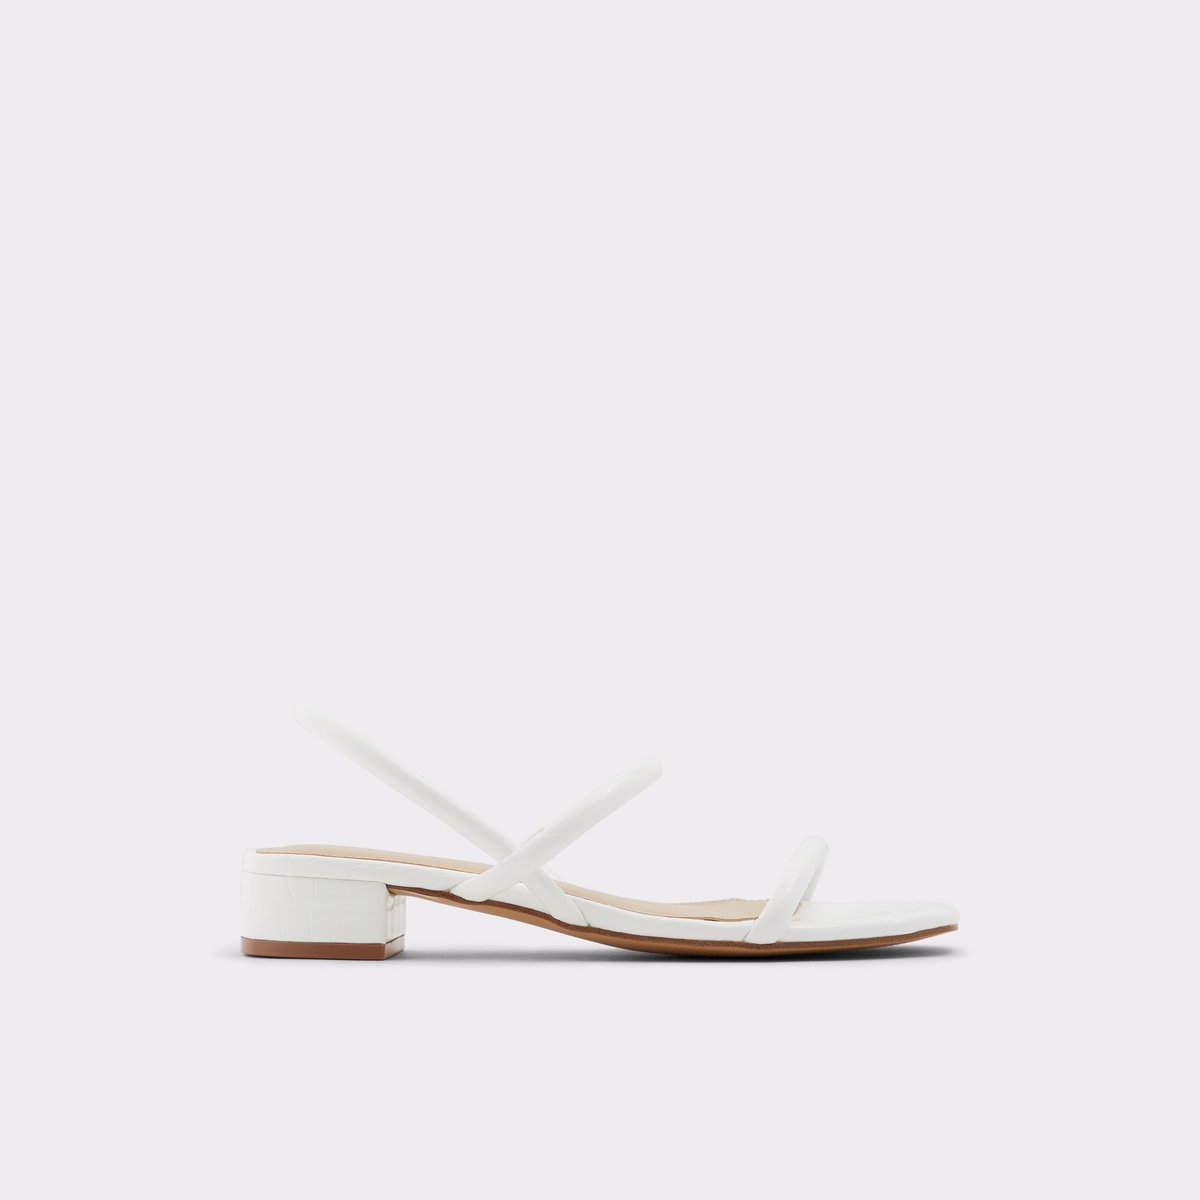 aldo white sandals